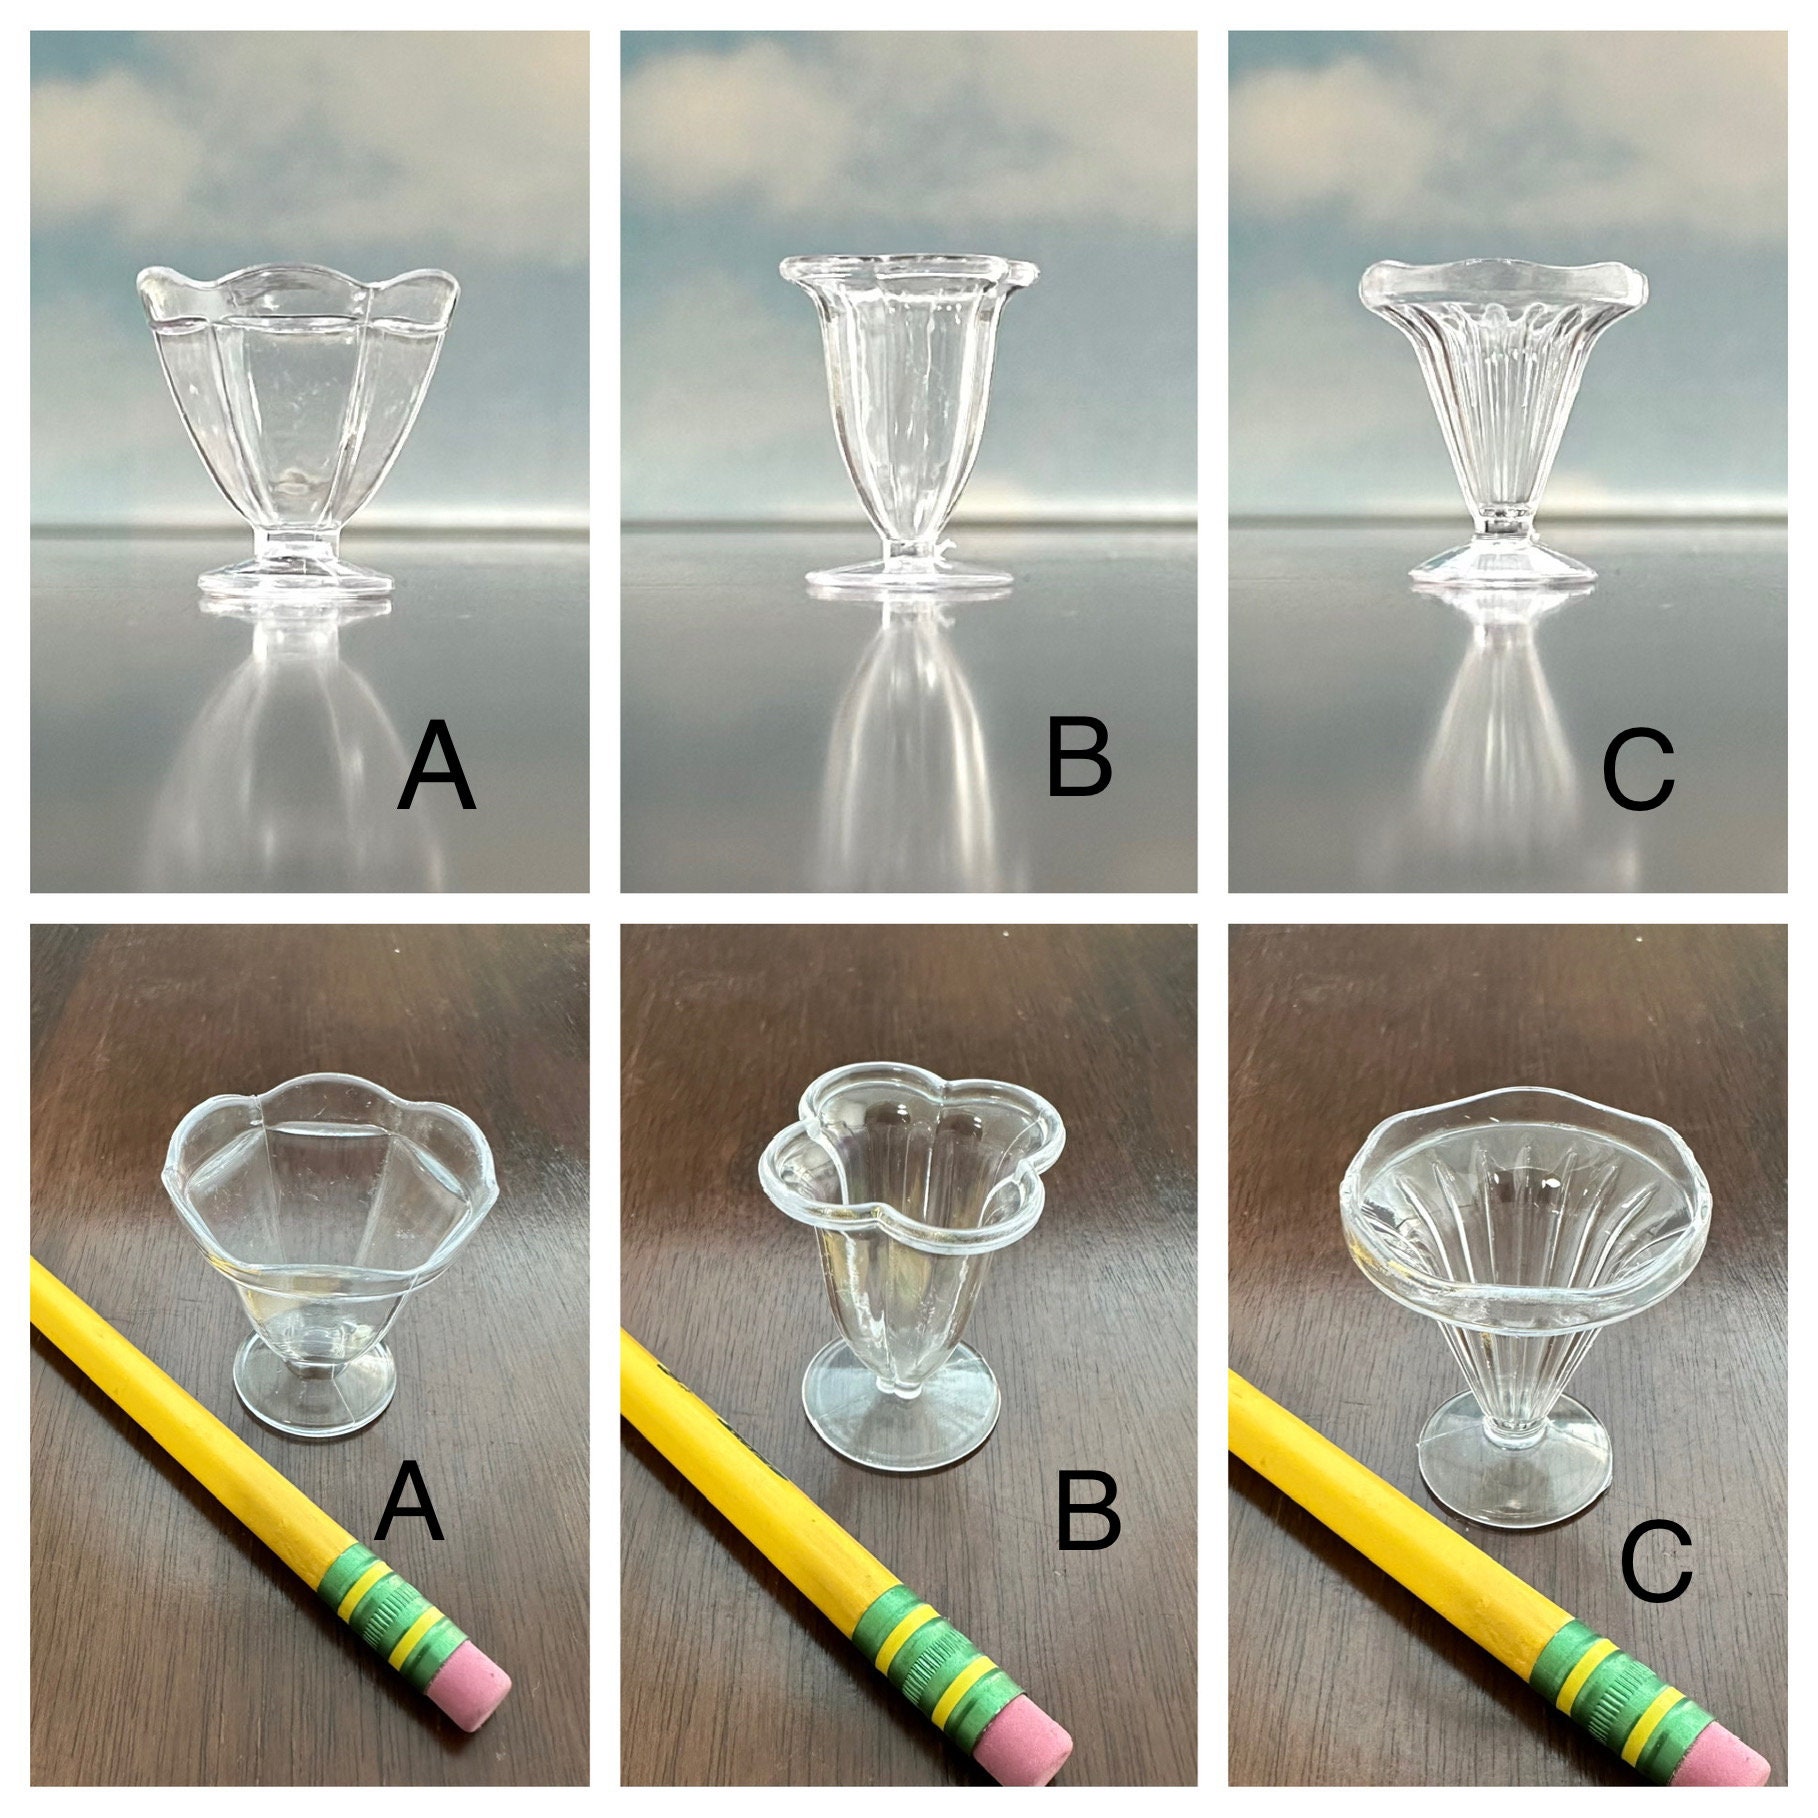 Youngever 7 Sets Plastic Parfait Cups, Reusable Plastic Dessert